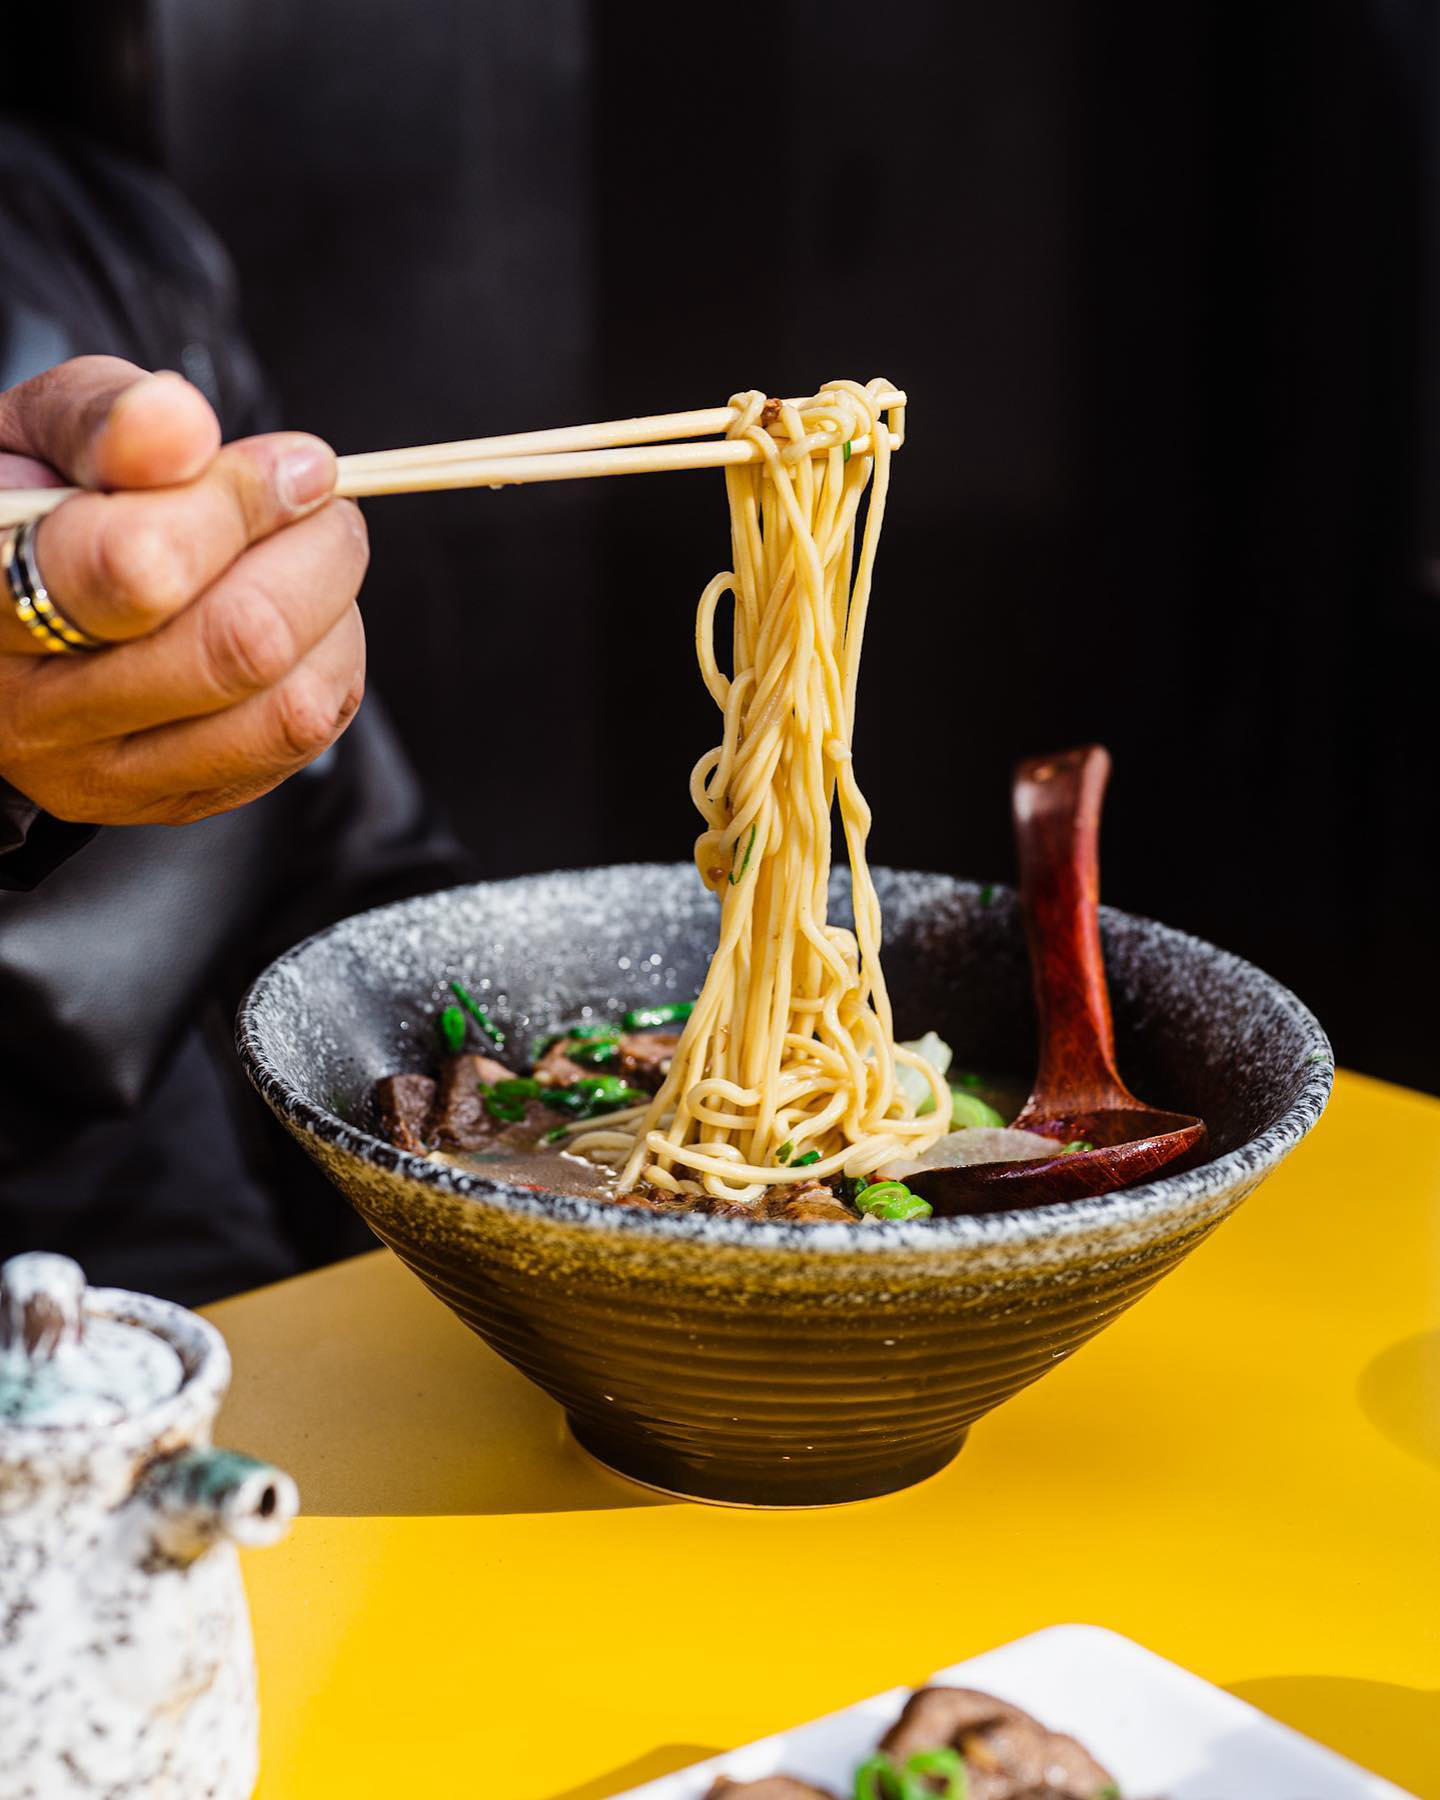 Yi Bowl Noodle 小黄碗 Paris - Noodles time